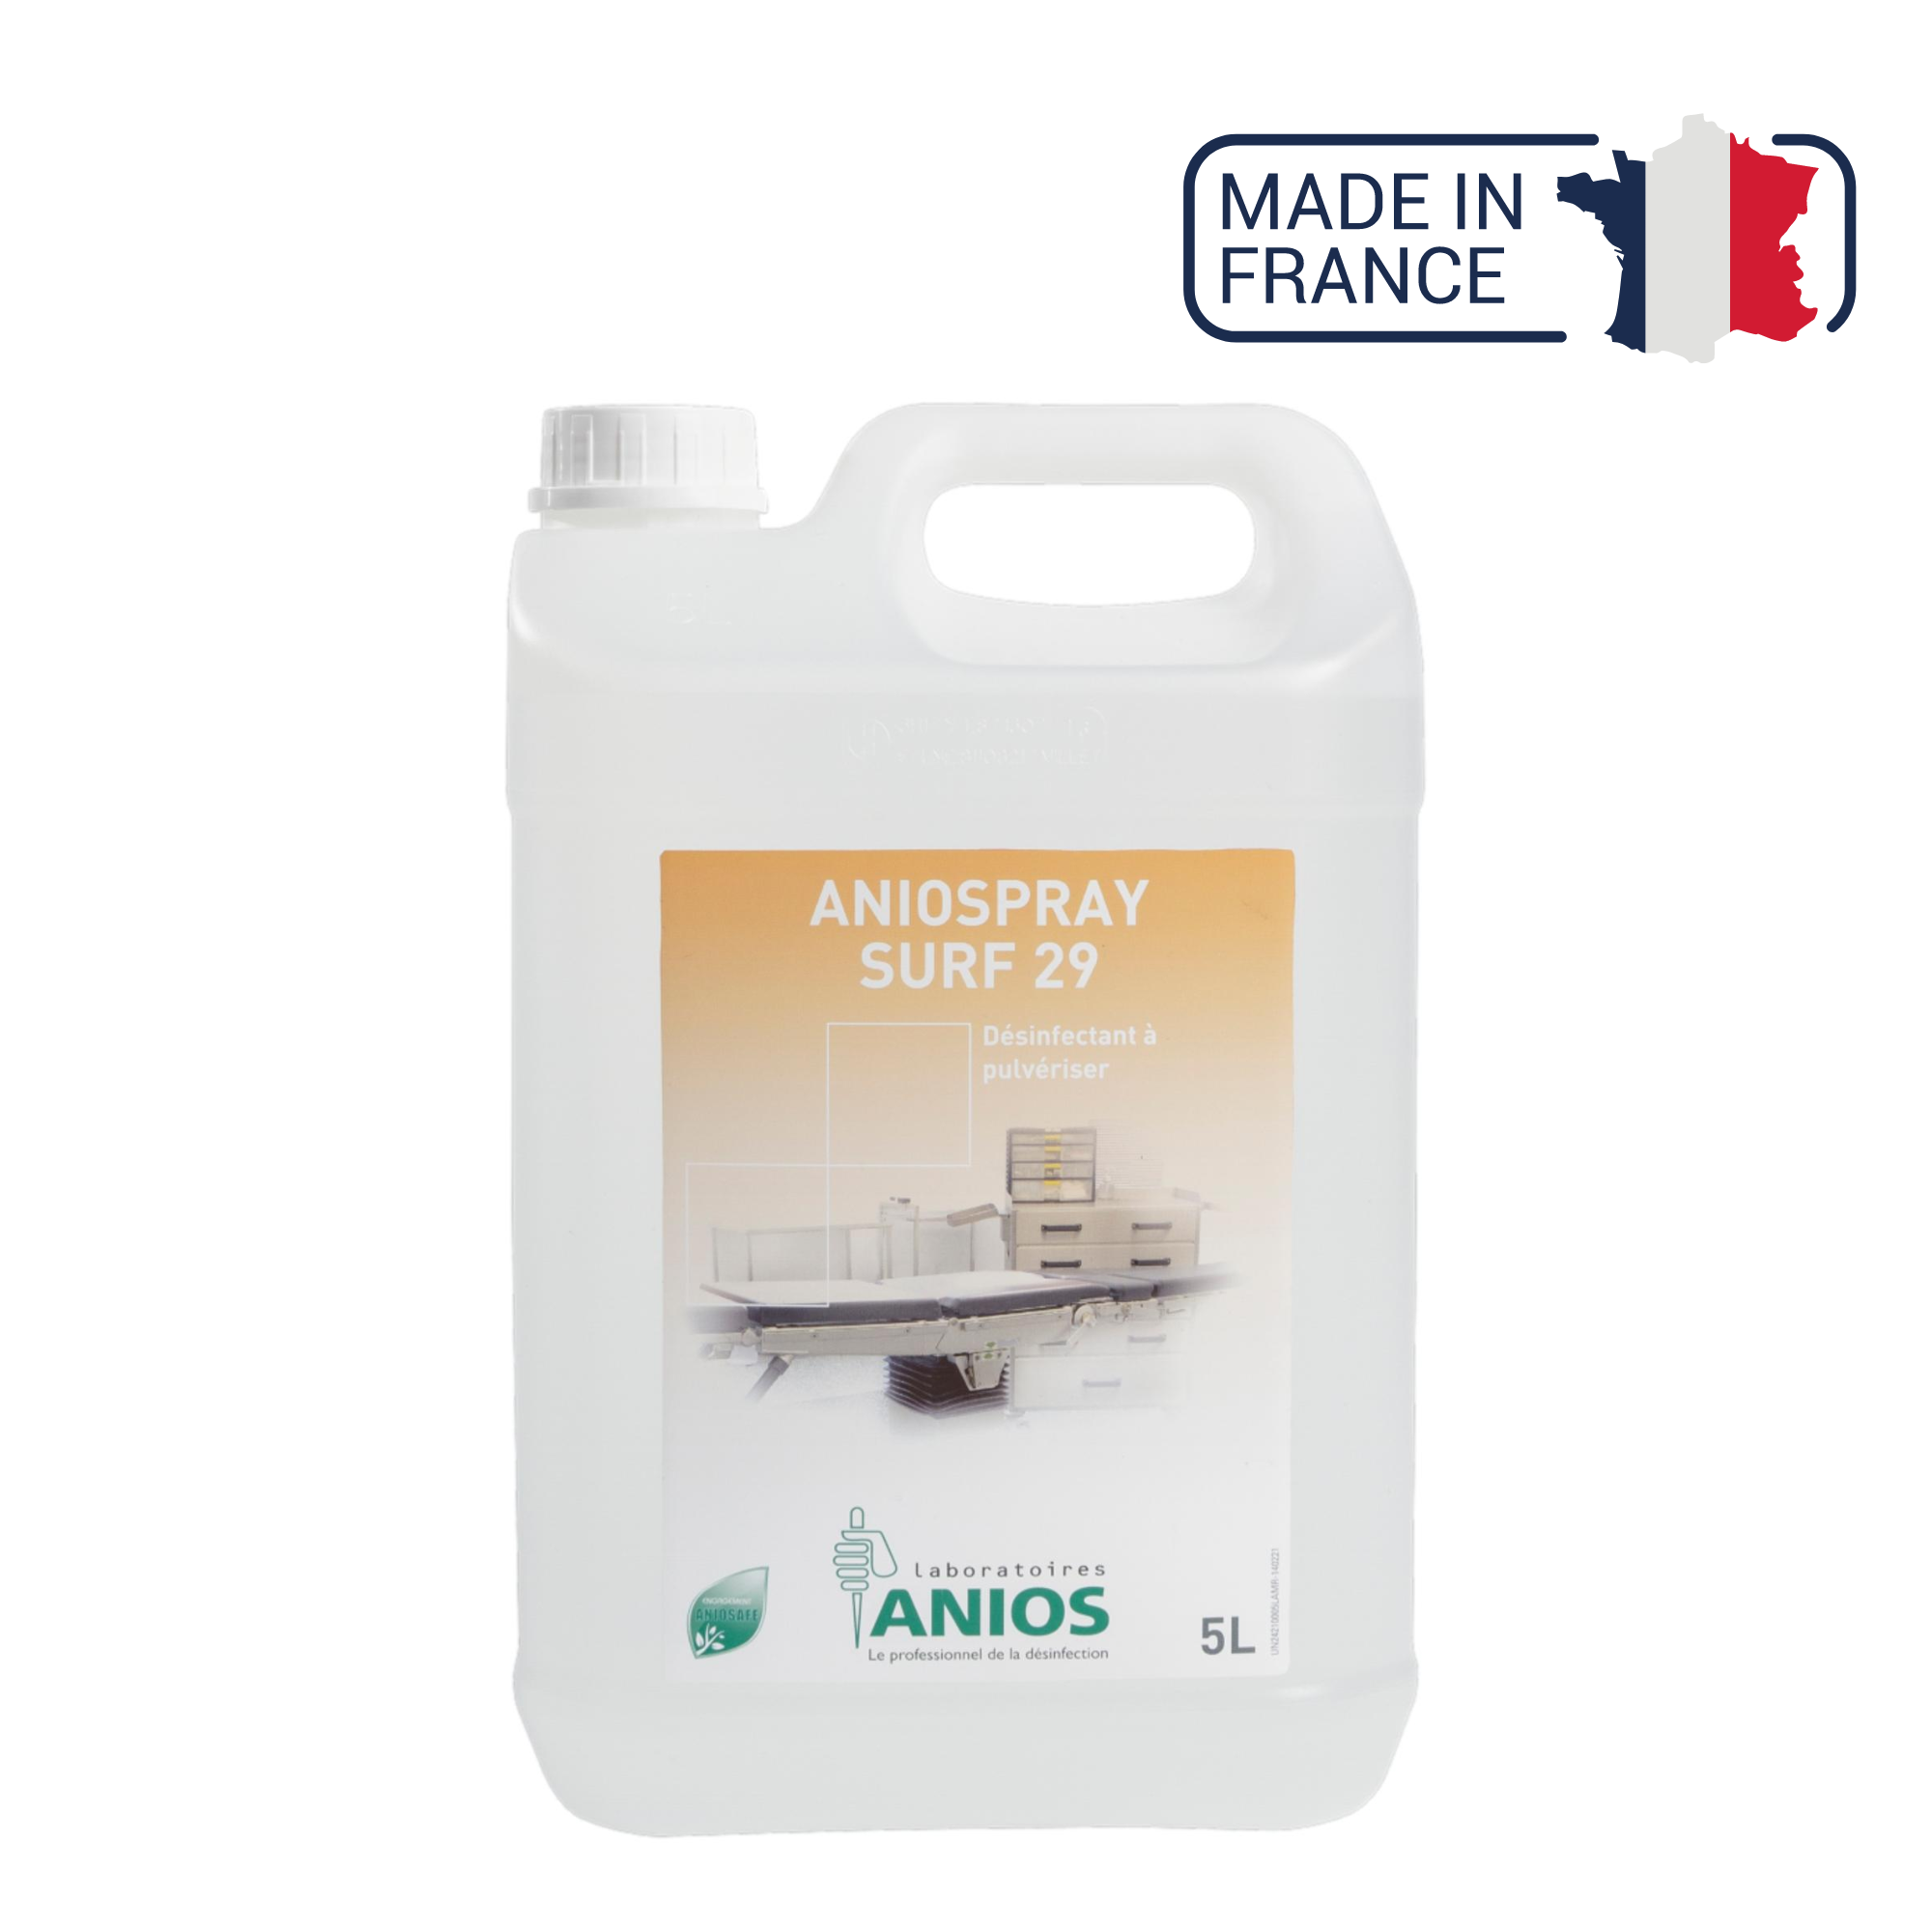 Aniospray Surf 29 - Désinfectant à pulvériser - 1L ou 5 L - Anios